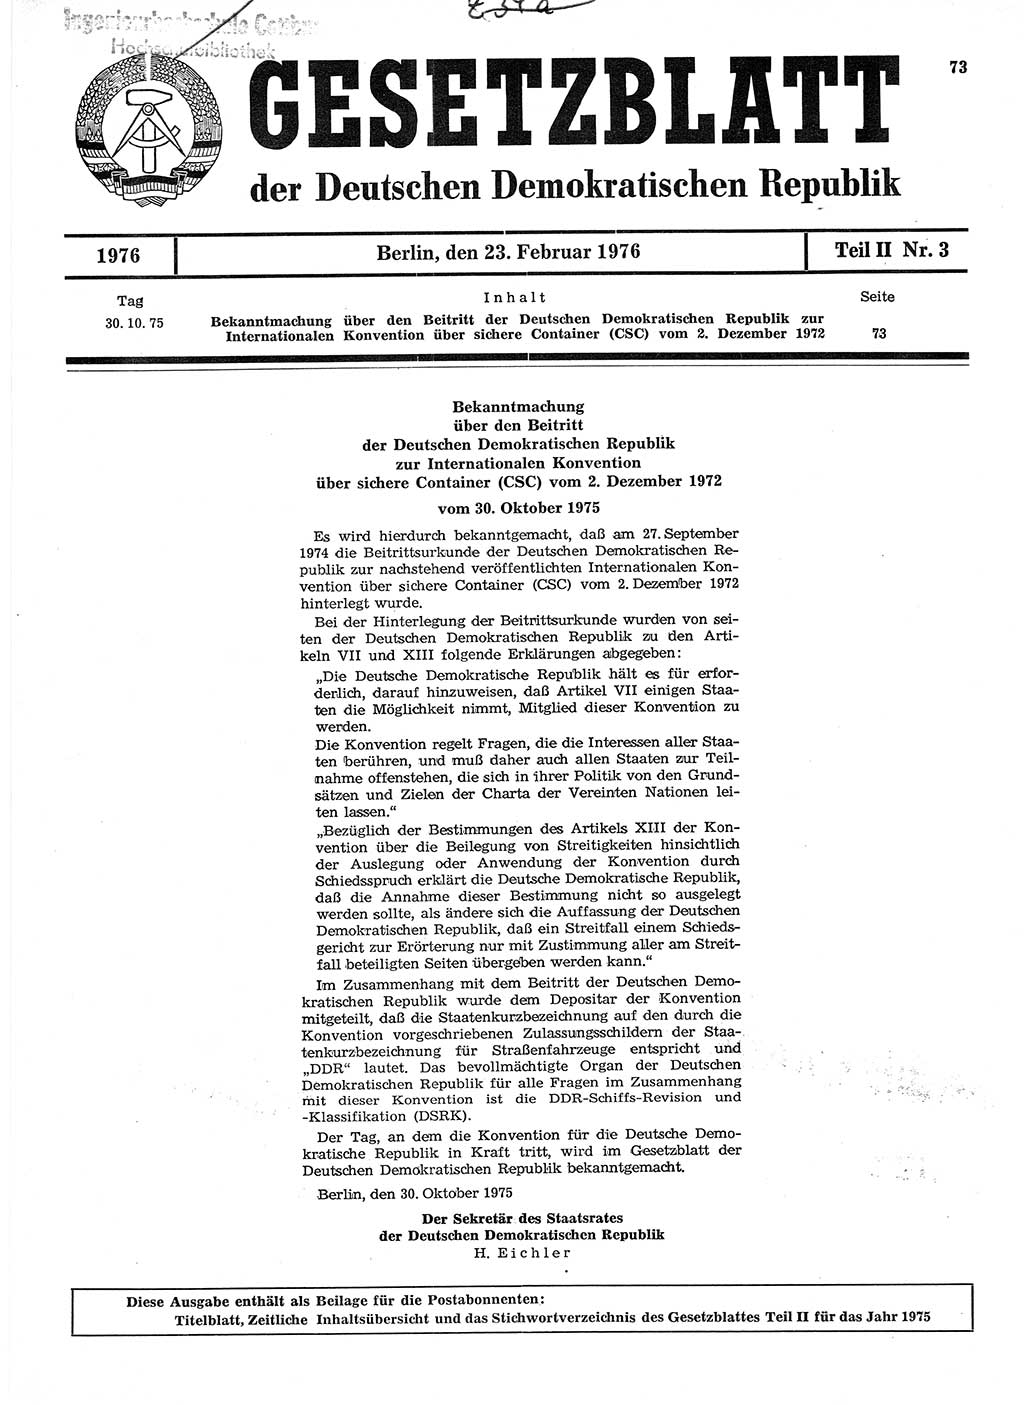 Gesetzblatt (GBl.) der Deutschen Demokratischen Republik (DDR) Teil ⅠⅠ 1976, Seite 73 (GBl. DDR ⅠⅠ 1976, S. 73)